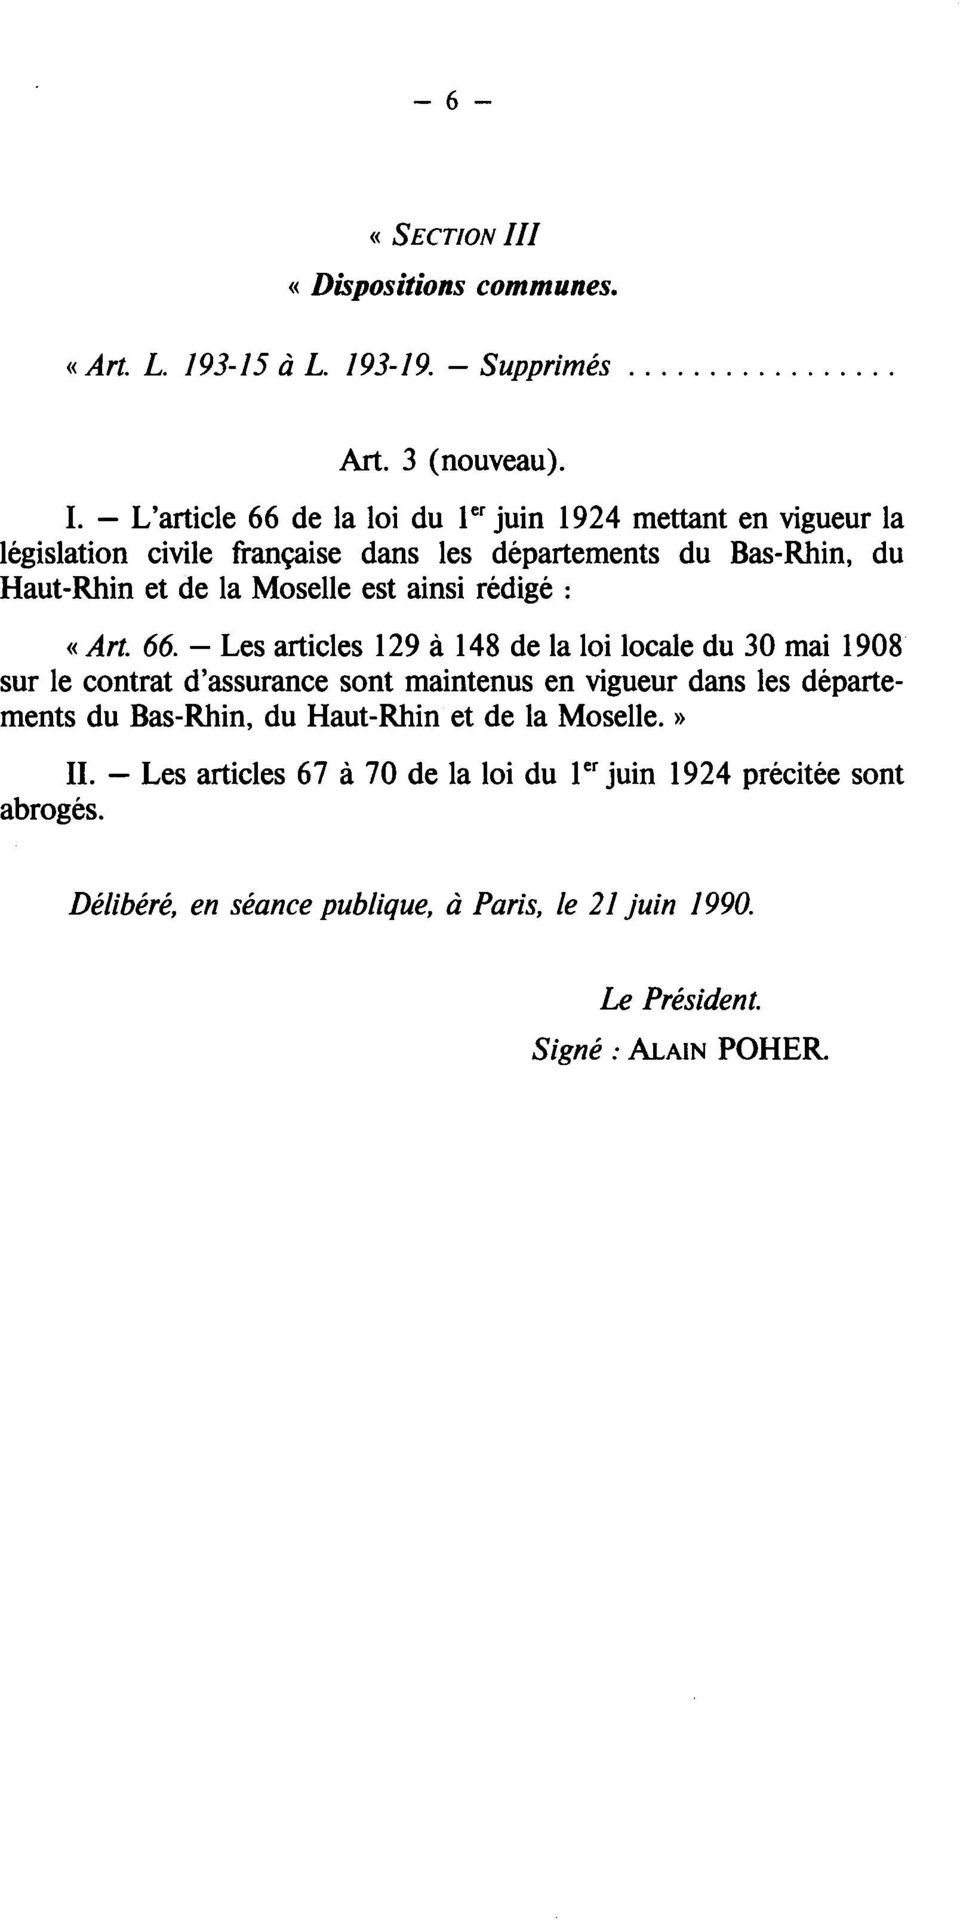 L'article 66 de la loi du 1 er juin 1924 mettant en vigueur la législation civile française dans les départements du Bas-Rhin, du Haut-Rhin et de la Moselle